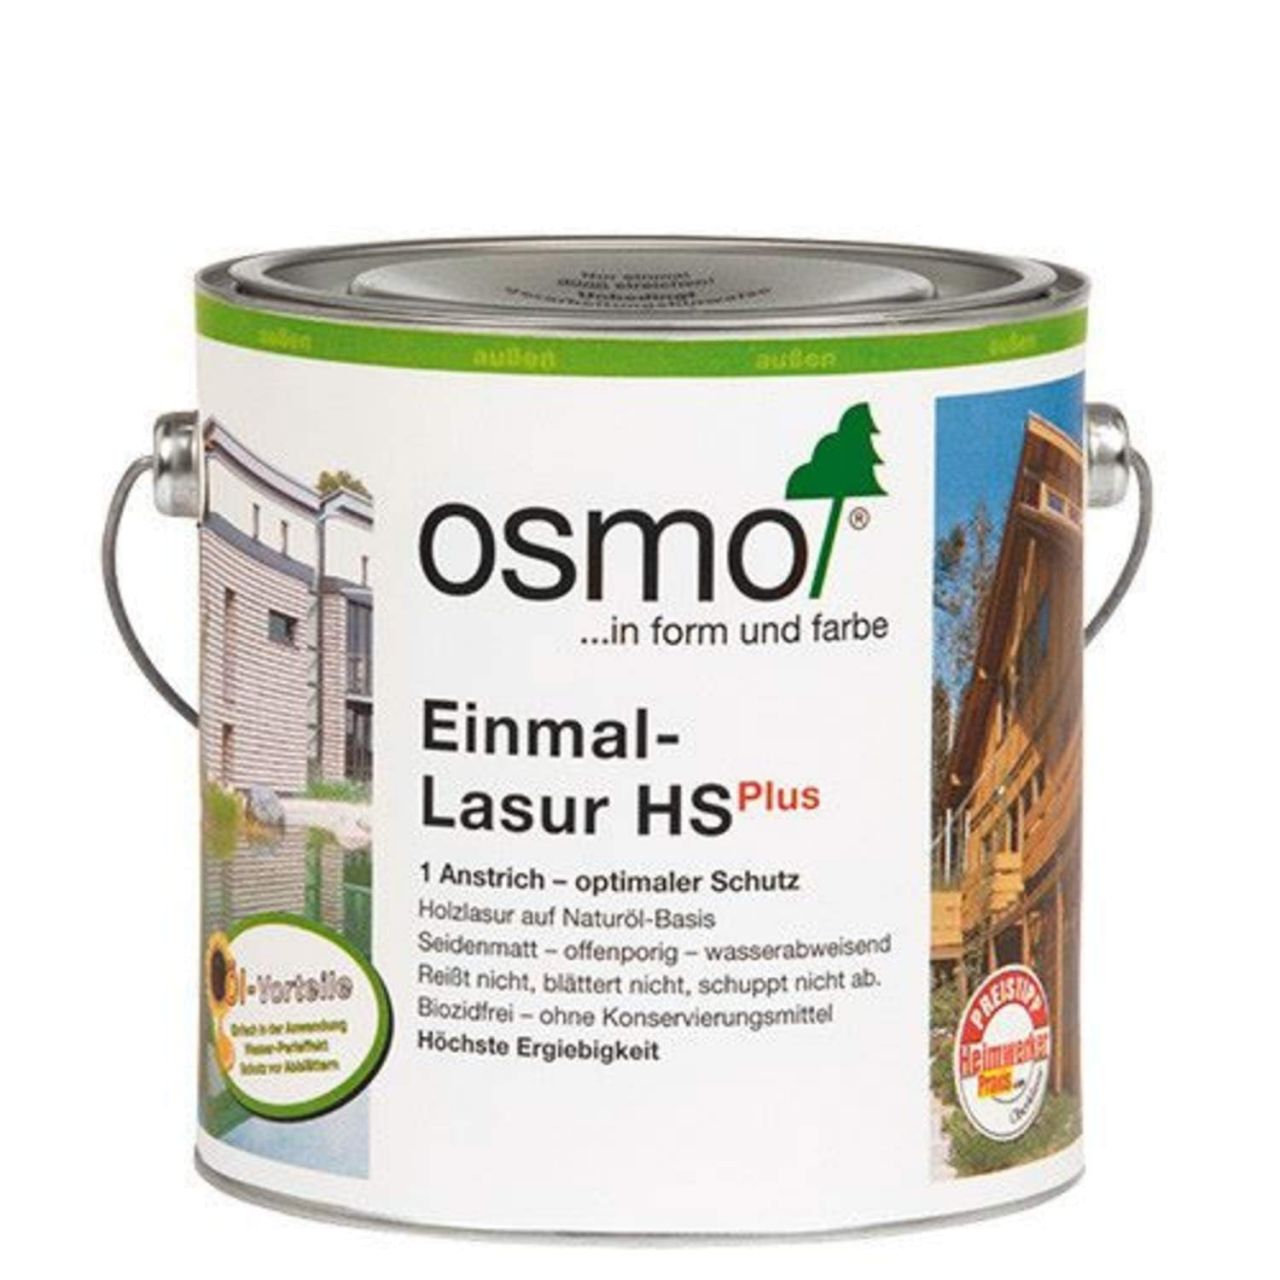 Osmo Einmal-Lasur HS Plus 2,5 Liter Teak 9262""